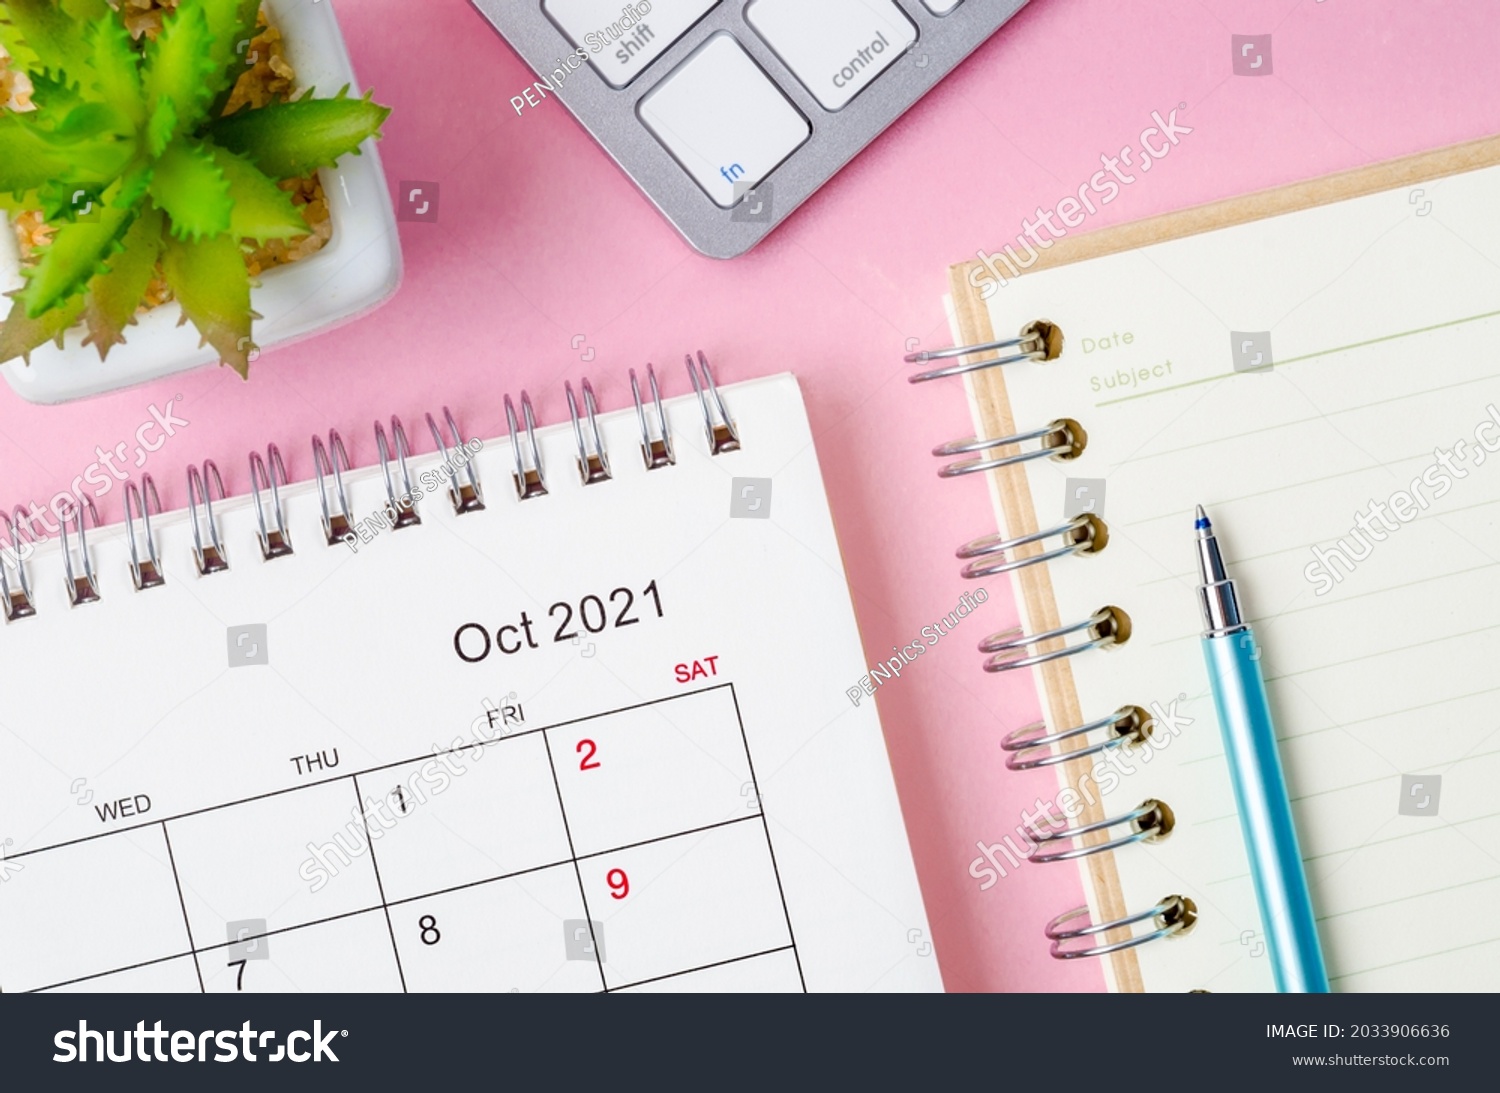 October 2021 desk calendar with keyboard computer on pink background. #2033906636